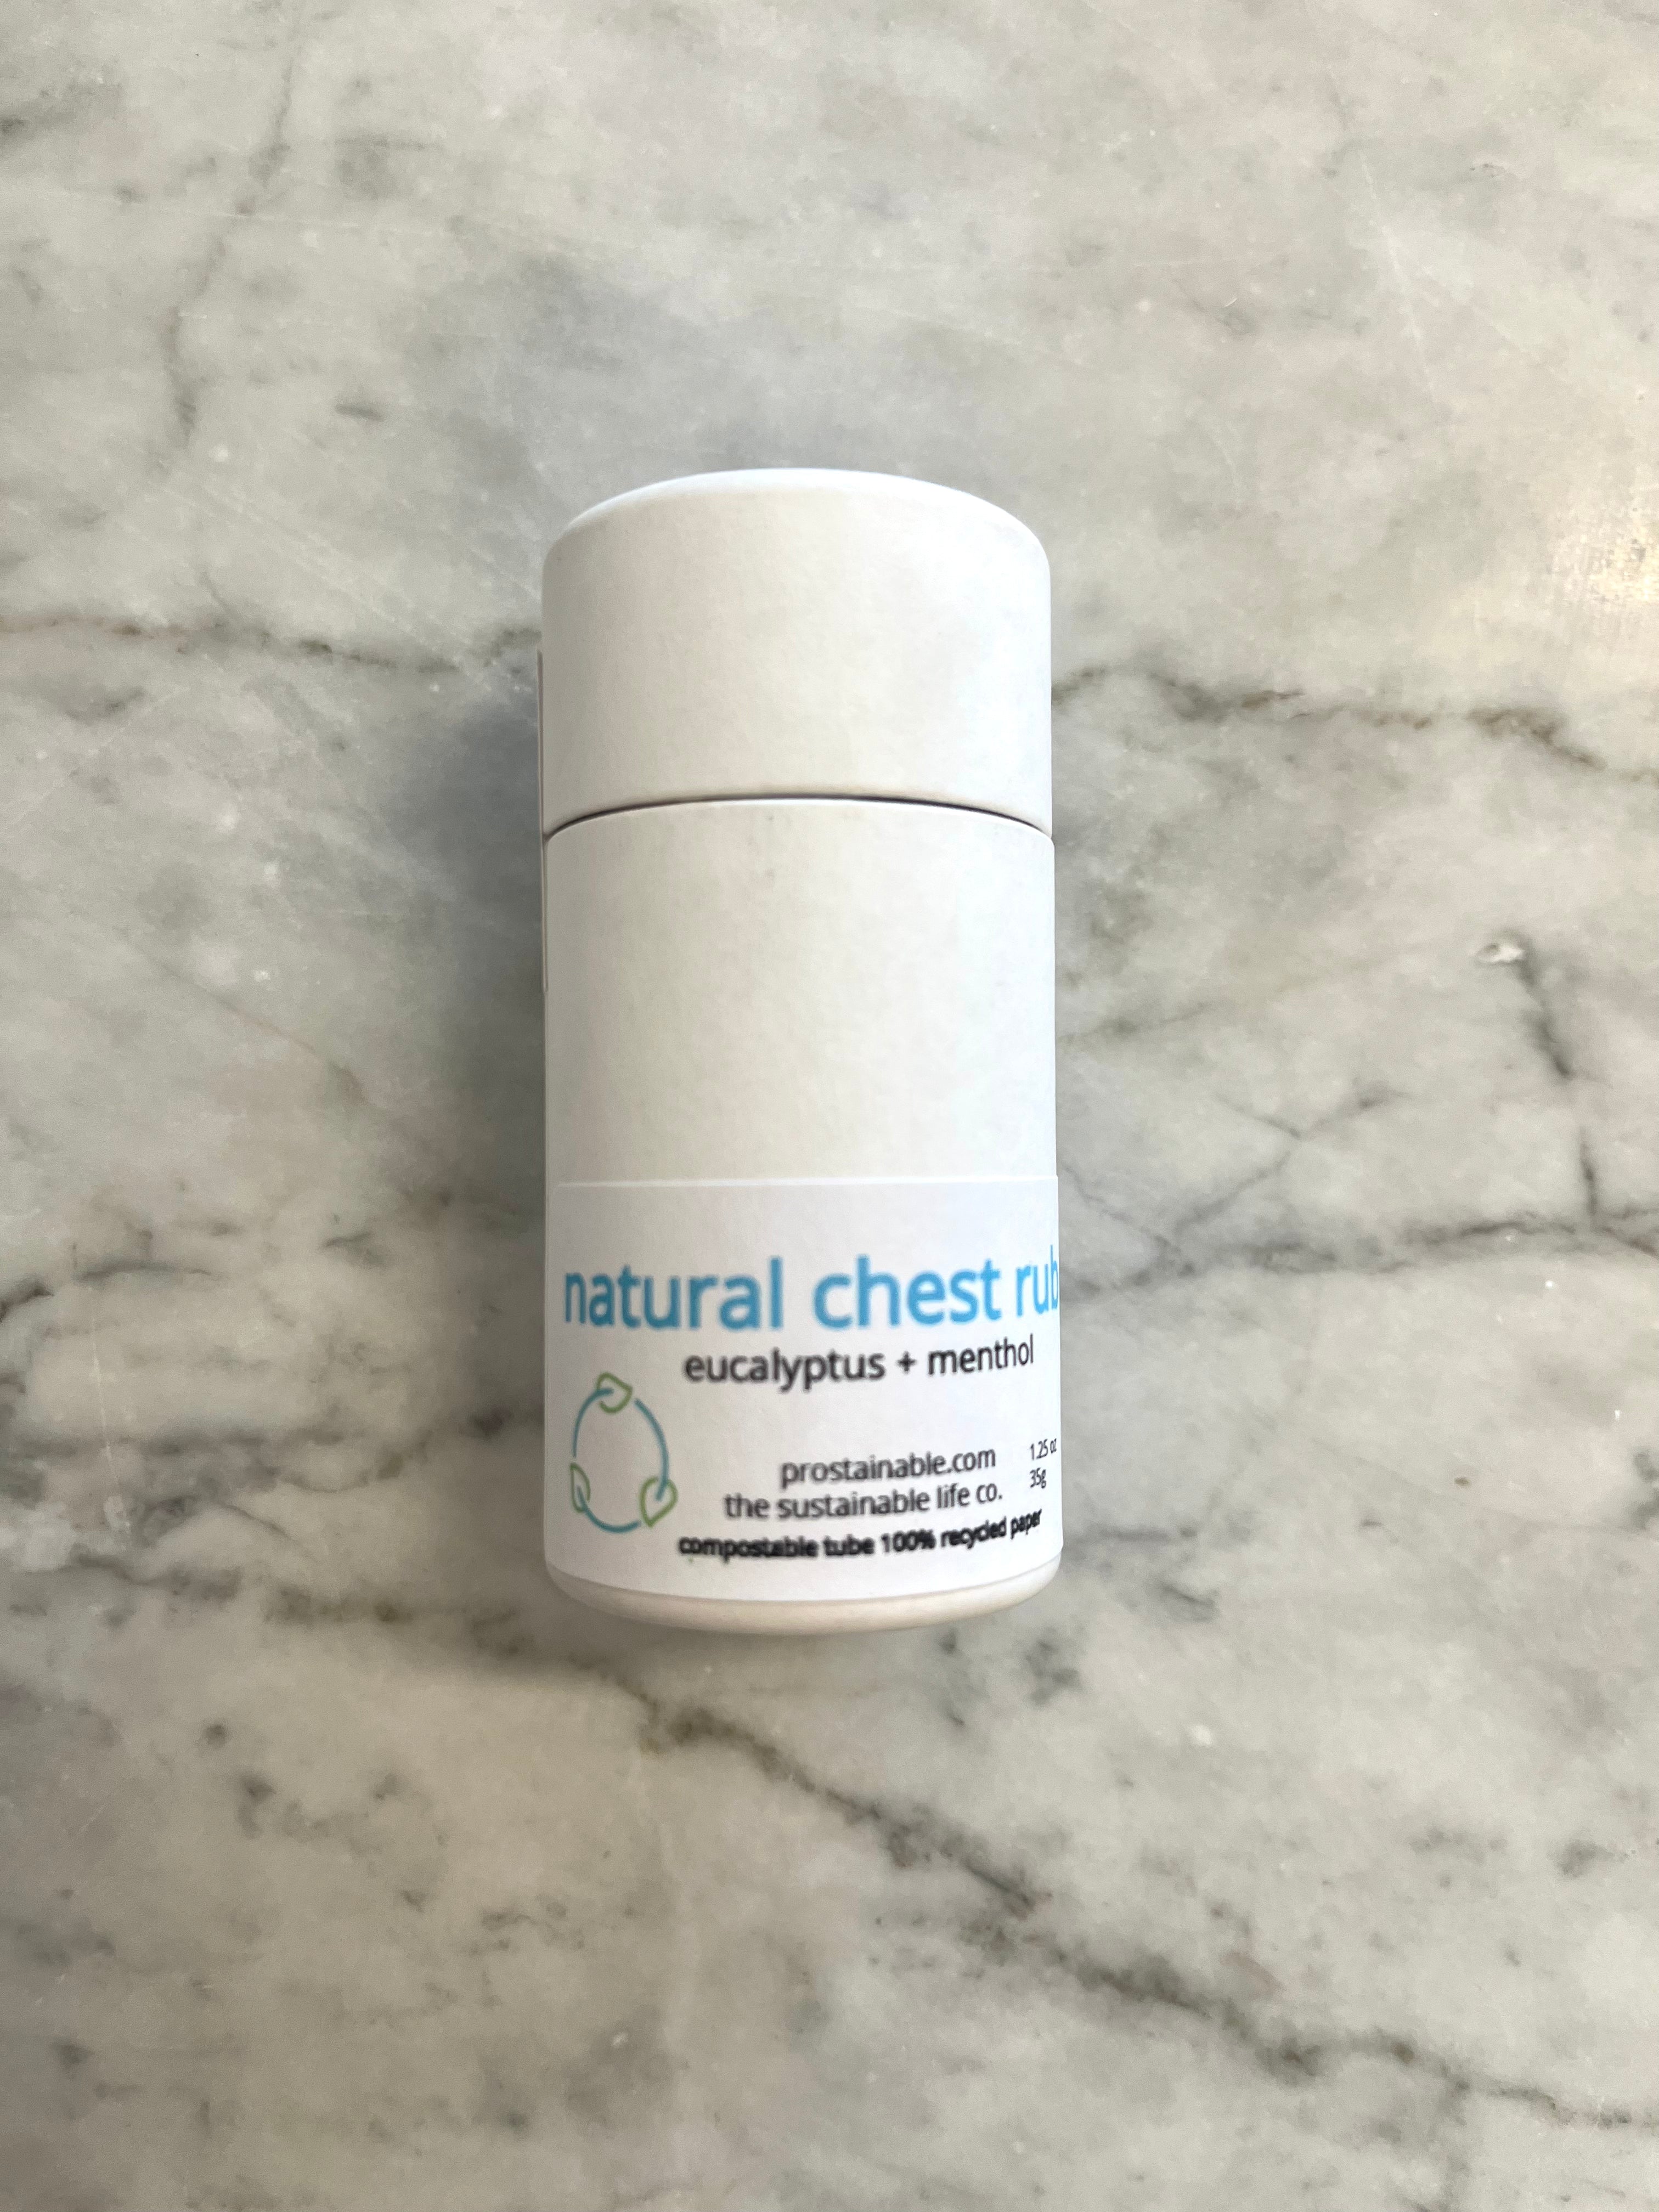 natural chest rub